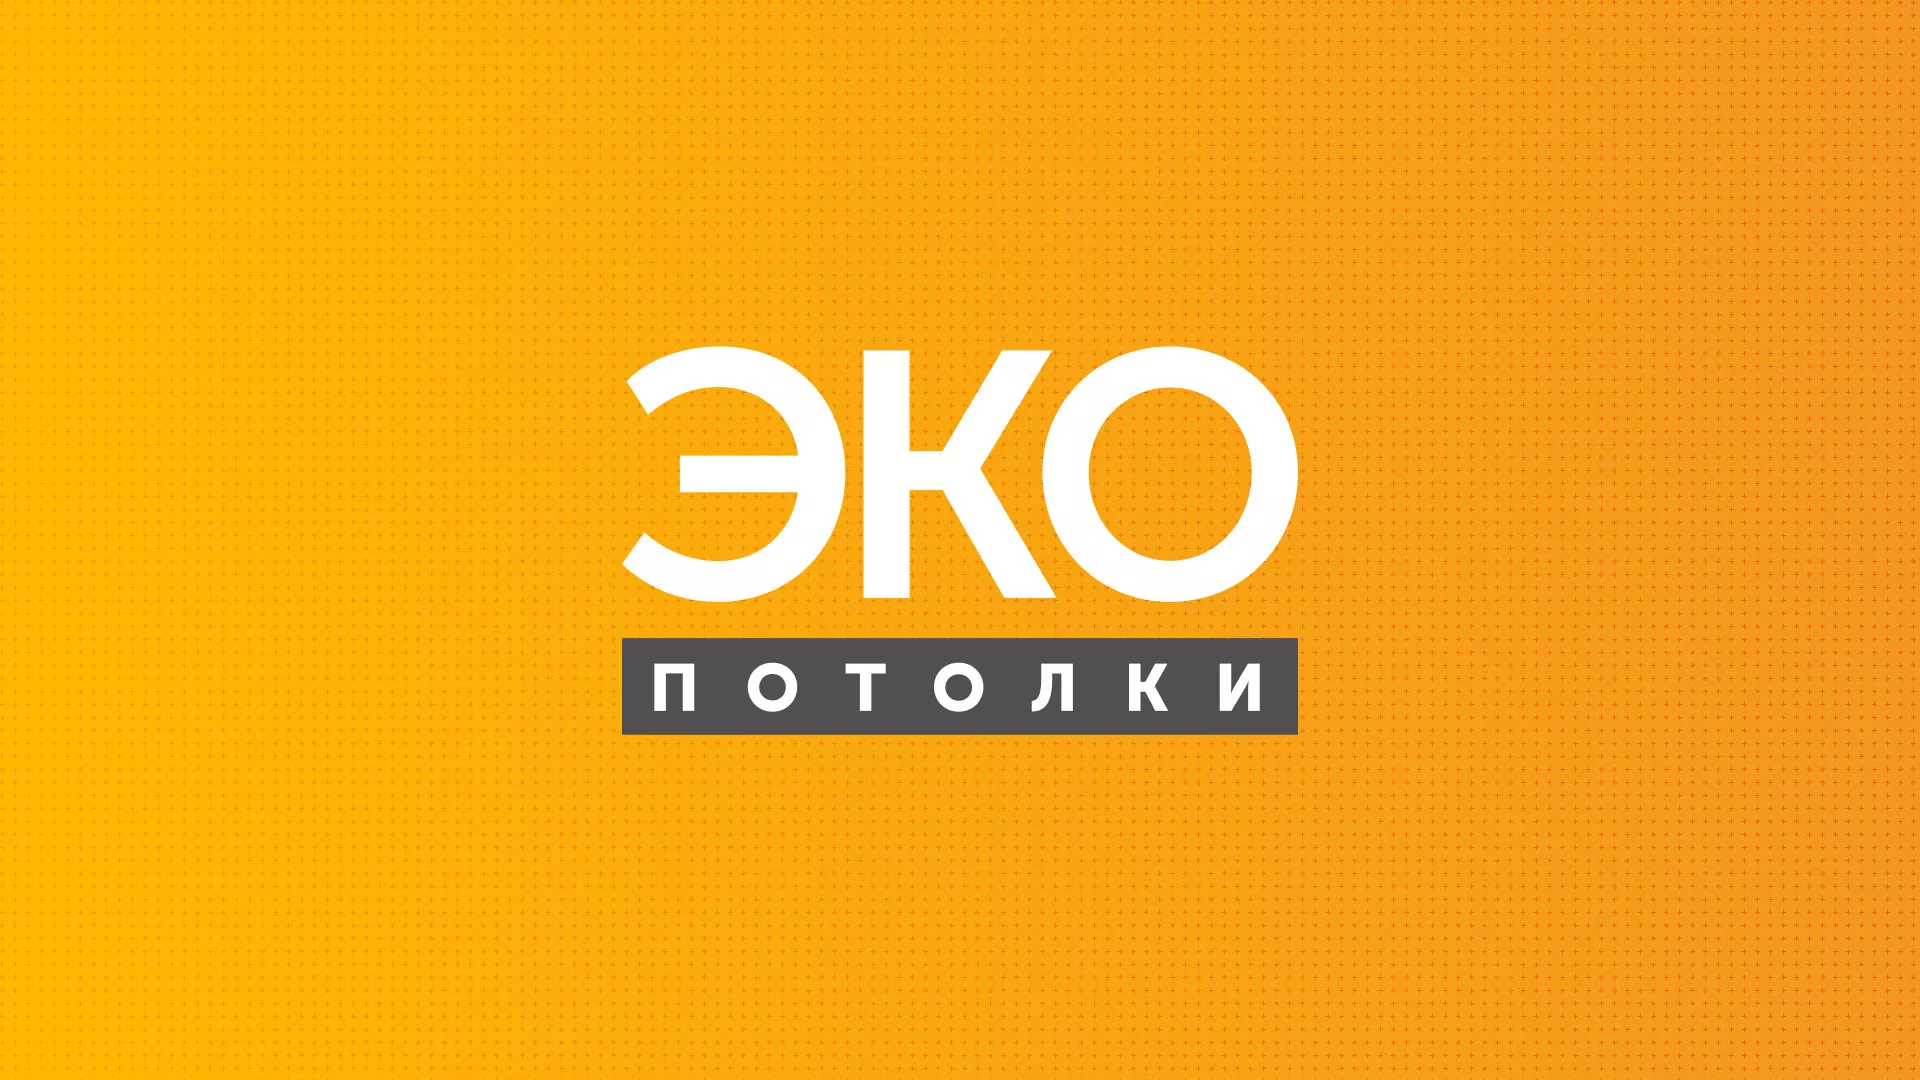 Разработка сайта по натяжным потолкам «Эко Потолки» в Кирово-Чепецке